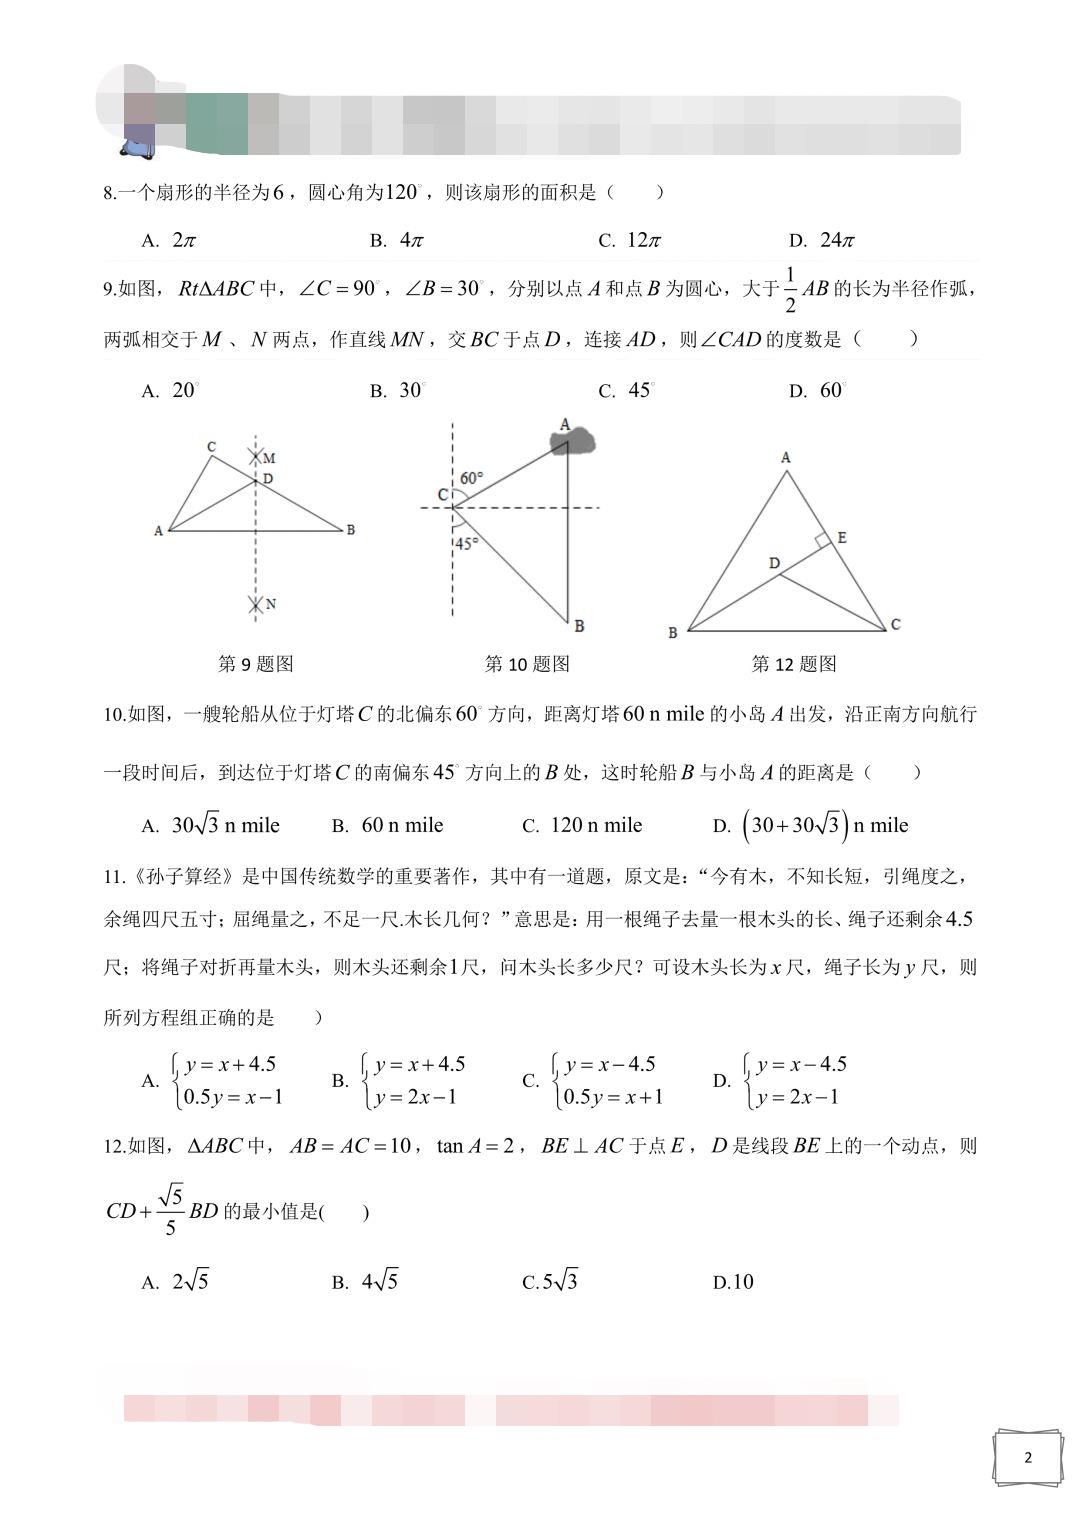 2019年湖南长沙中考数学真题及答案【图片版】2.jpg